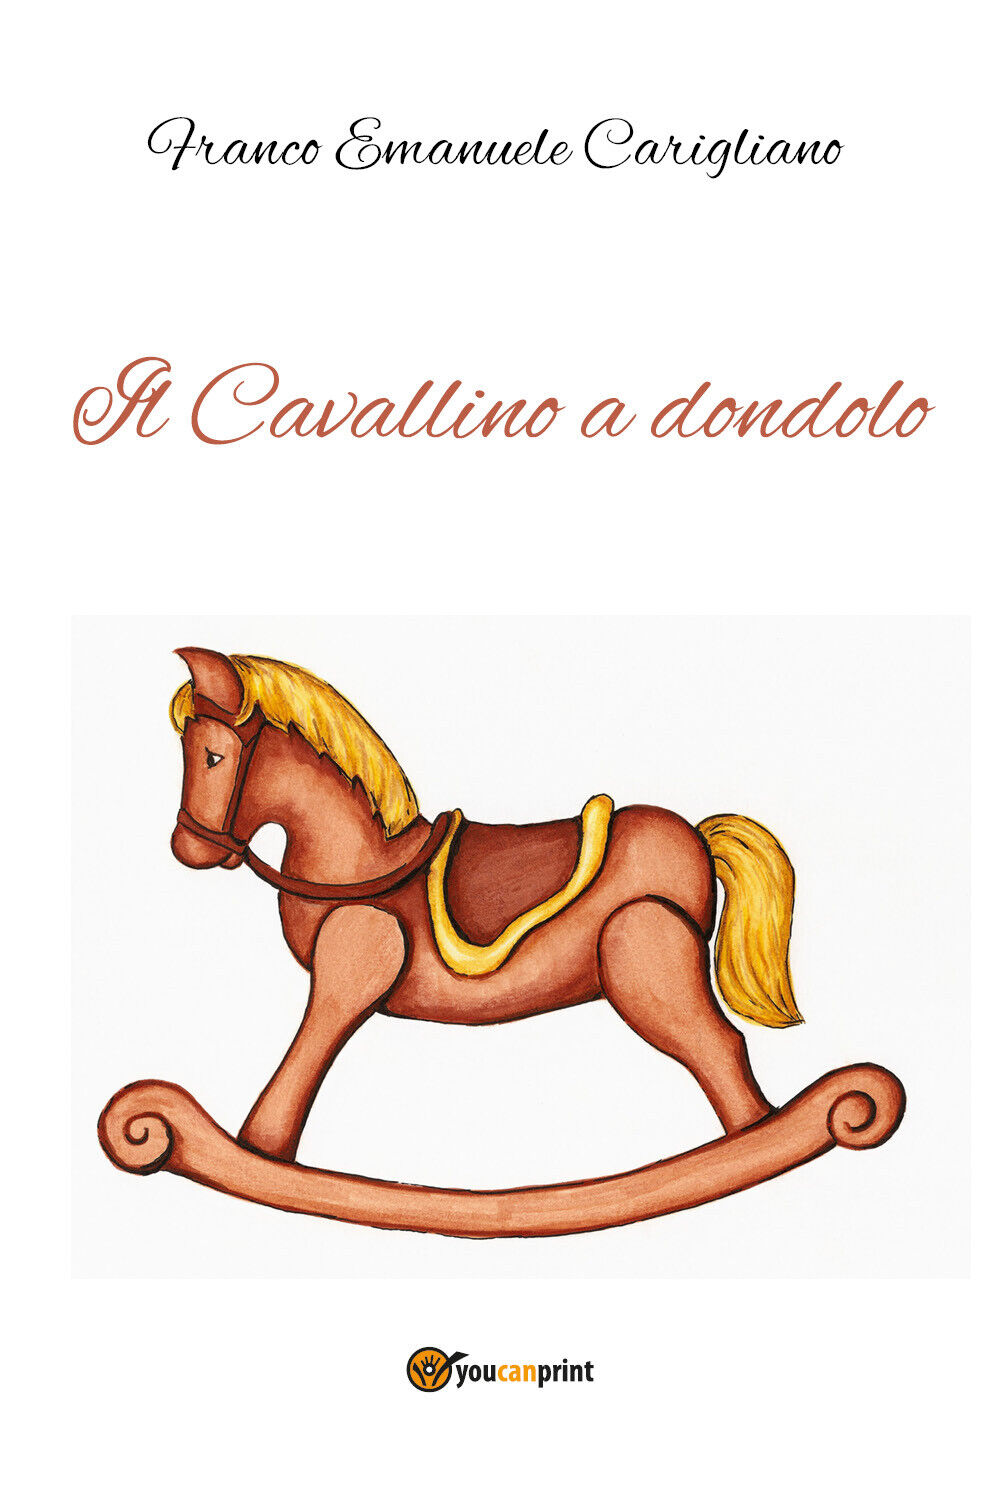 Il Cavallino a dondolo di Franco Emanuele Carigliano,  2021,  Youcanprint